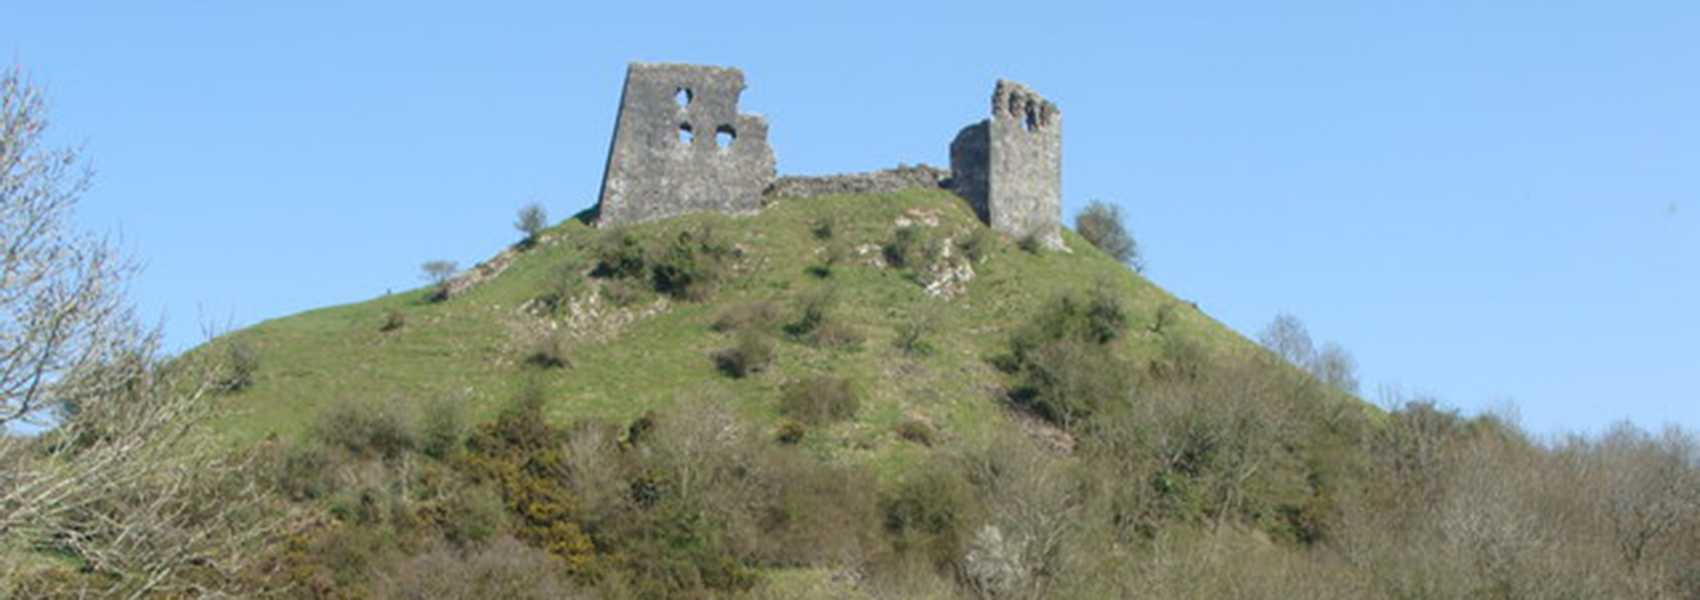 Dryslwyn Castle by Ruth Shareville